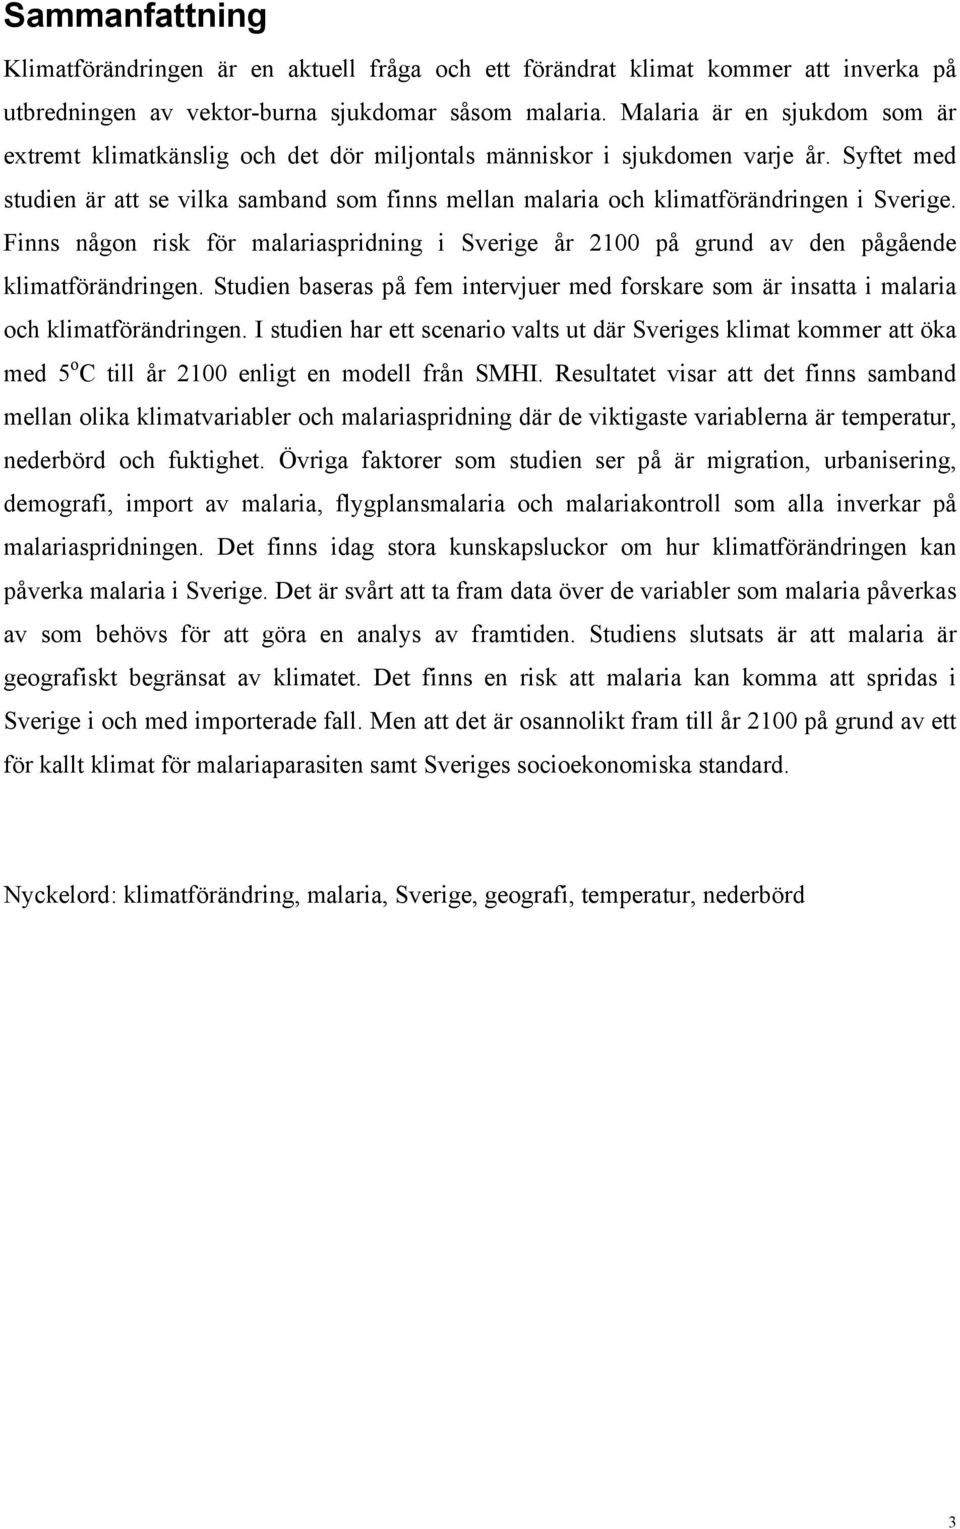 Syftet med studien är att se vilka samband som finns mellan malaria och klimatförändringen i Sverige.